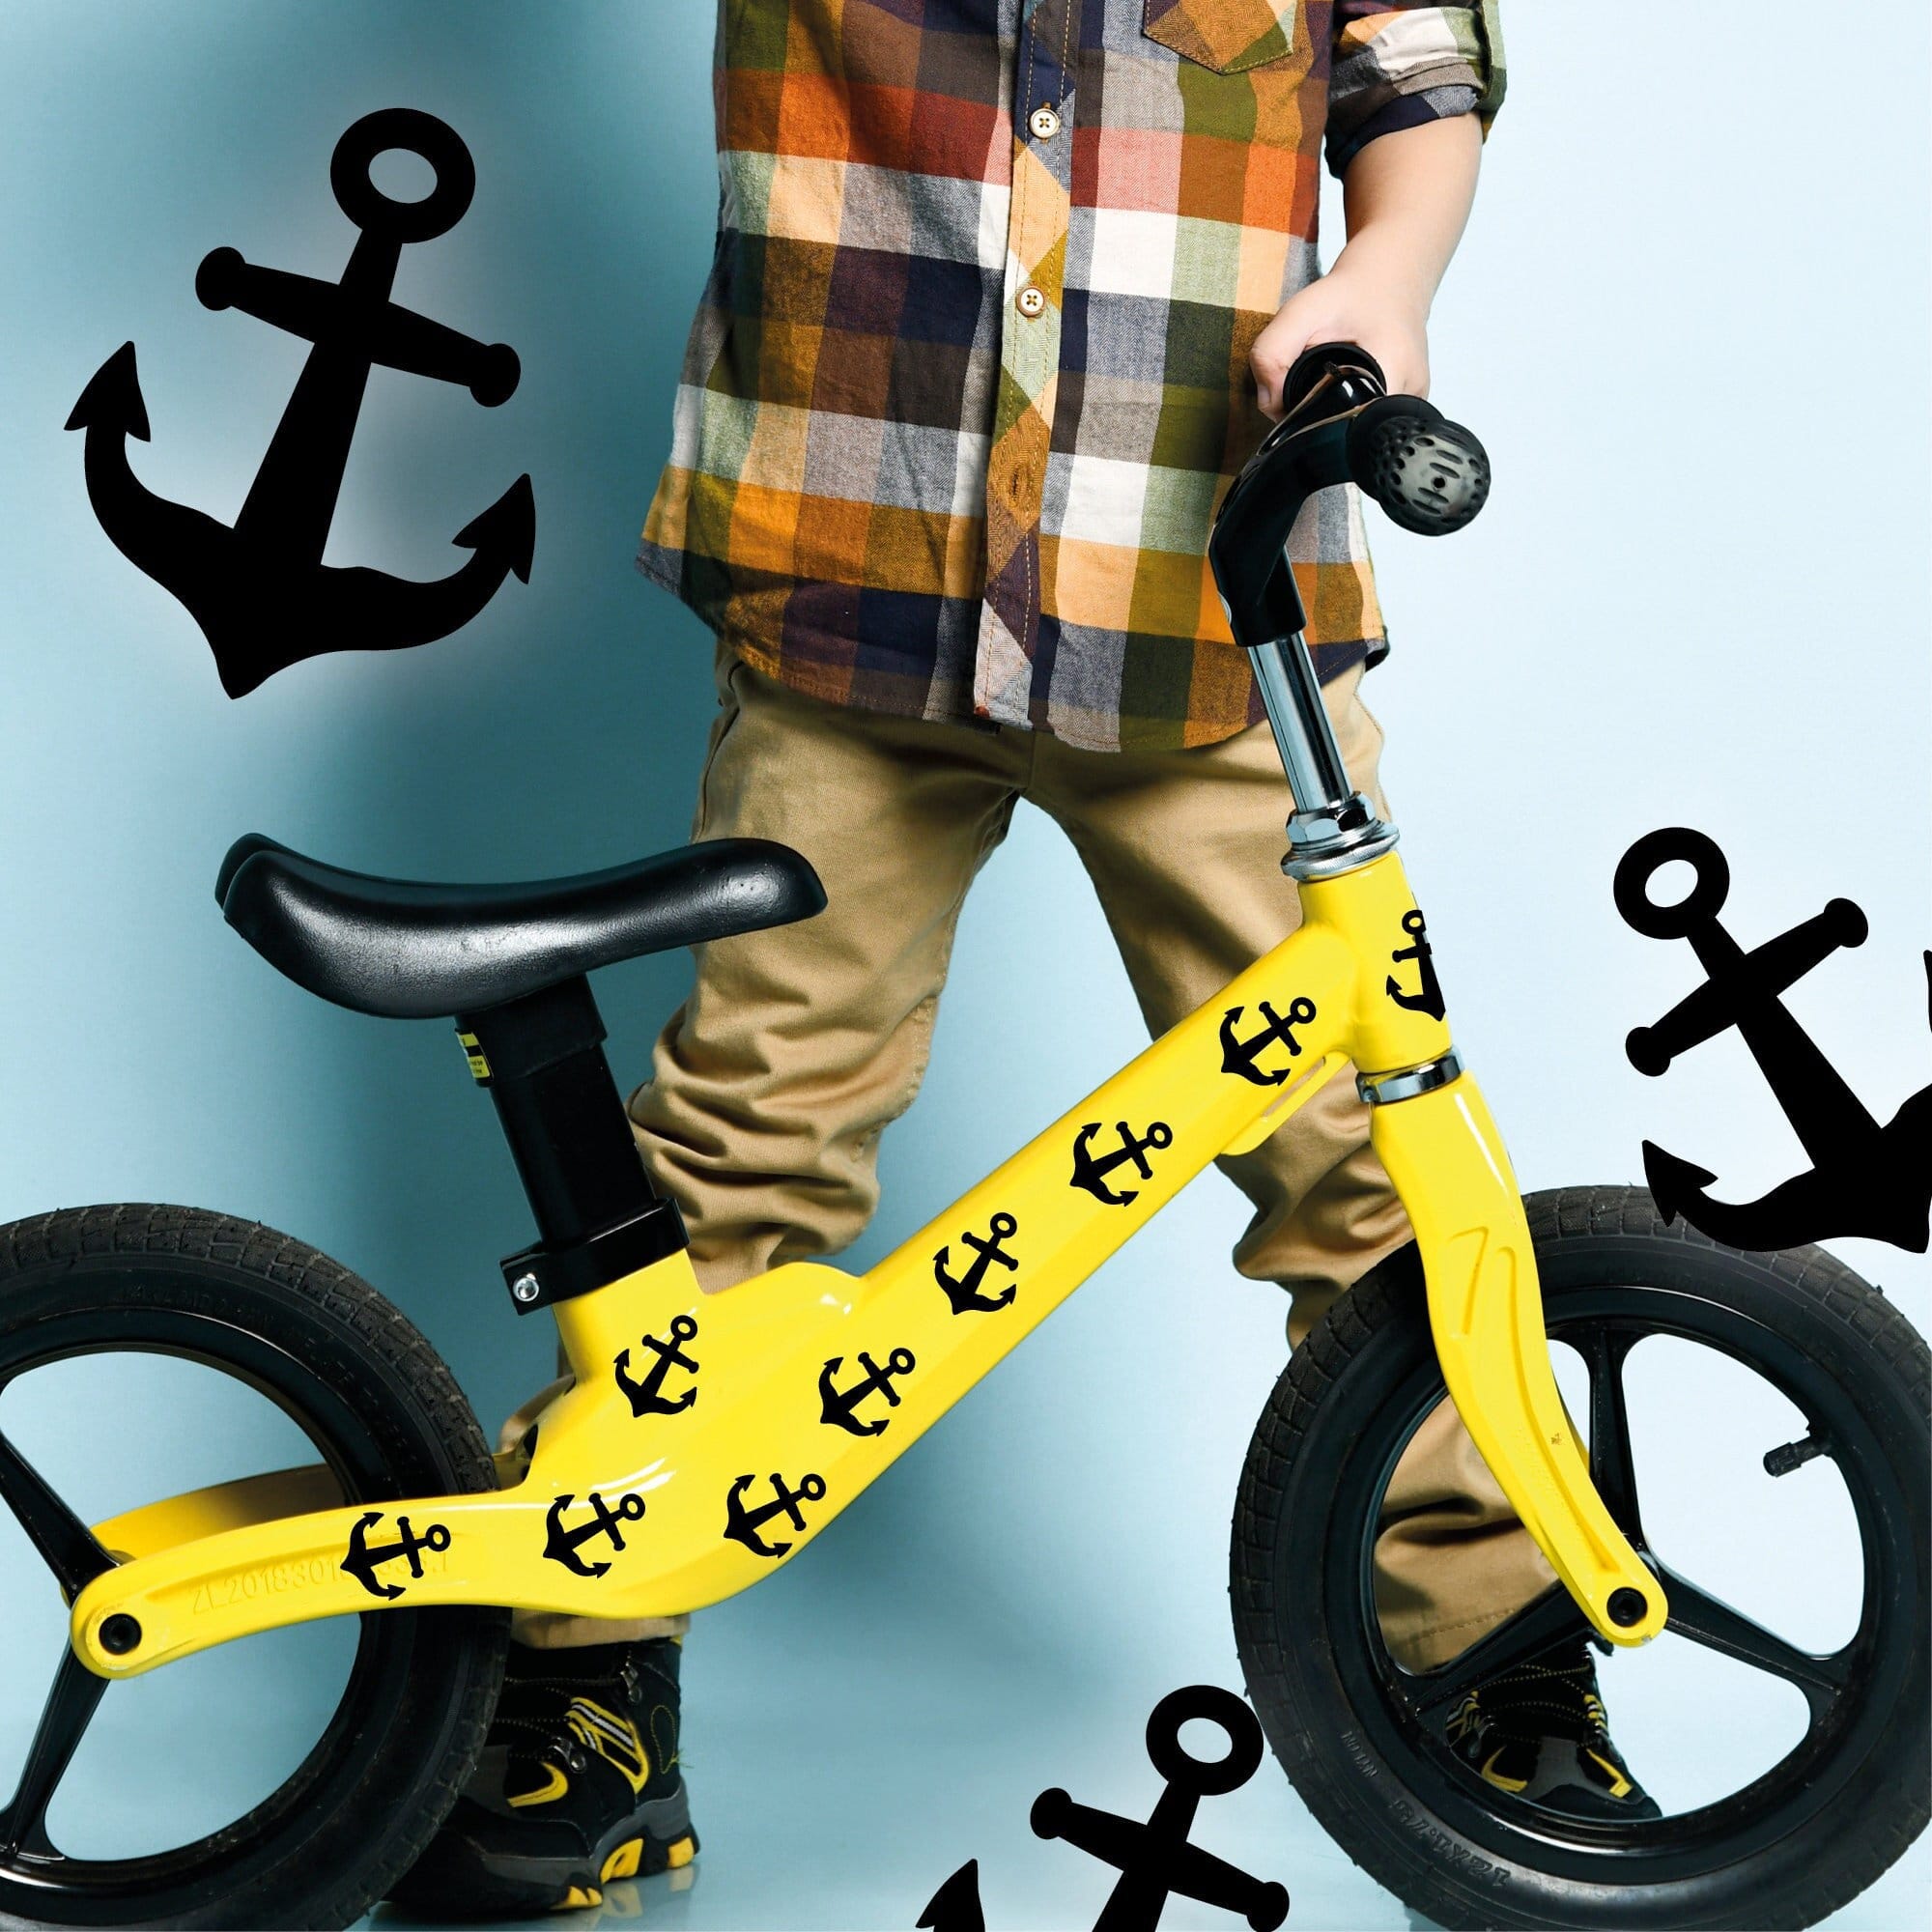 Fahrradaufkleber Fahrrad Sticker Fahrraddesign Kinderfahrrad Aufkleber Anker Totenköpfe Dekoration